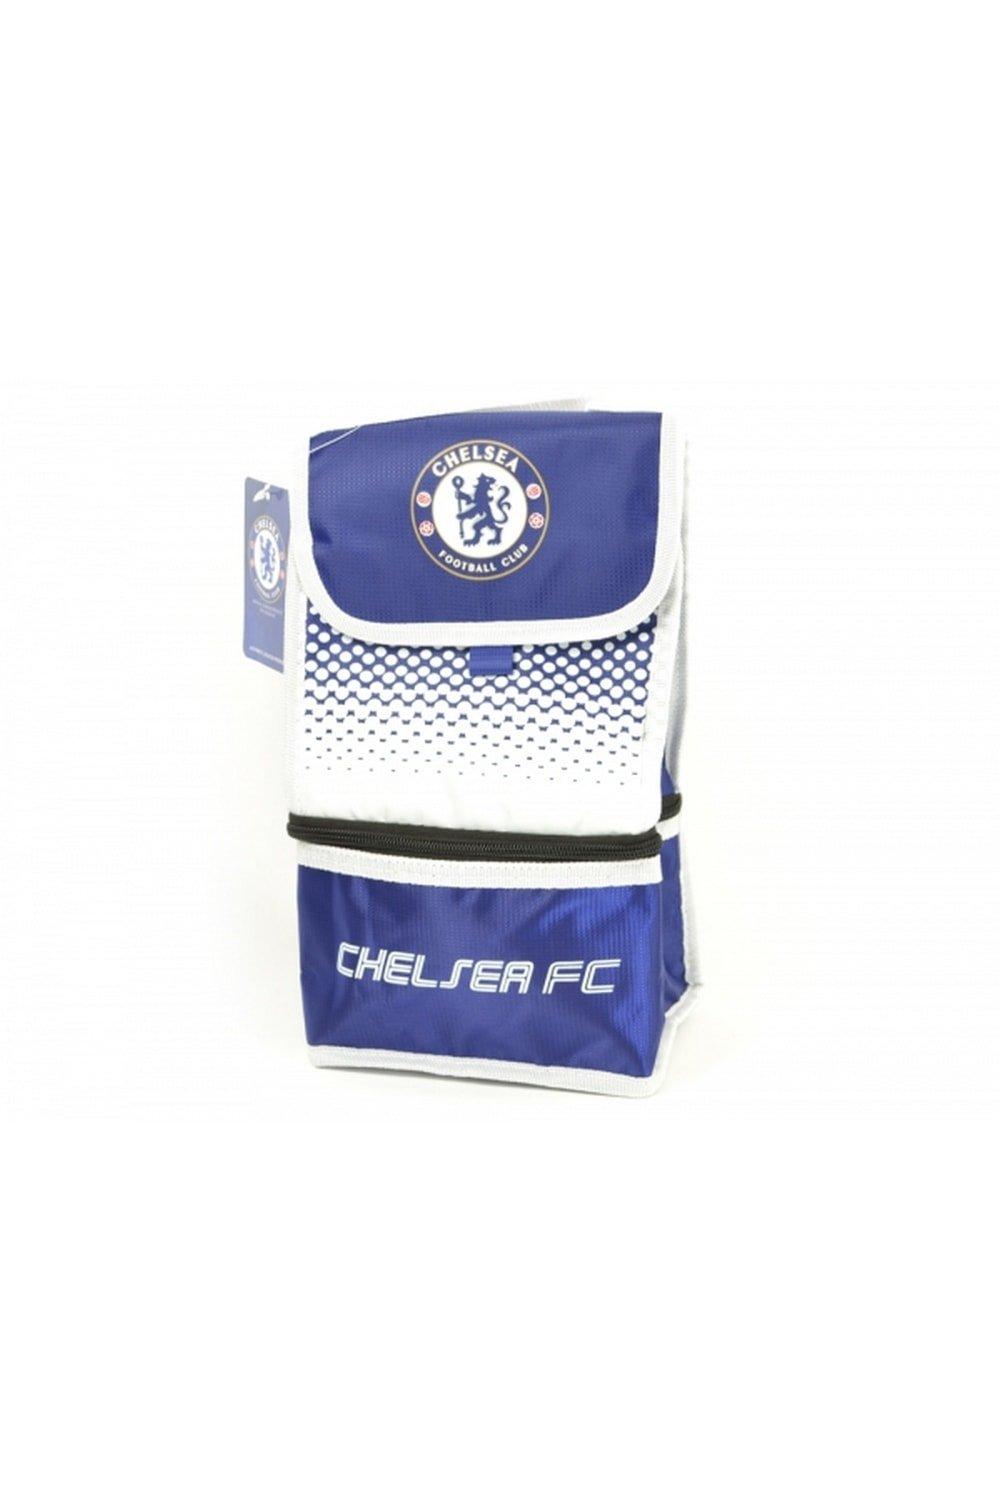 Официальная сумка для обеда Football Fade Design Chelsea FC, синий